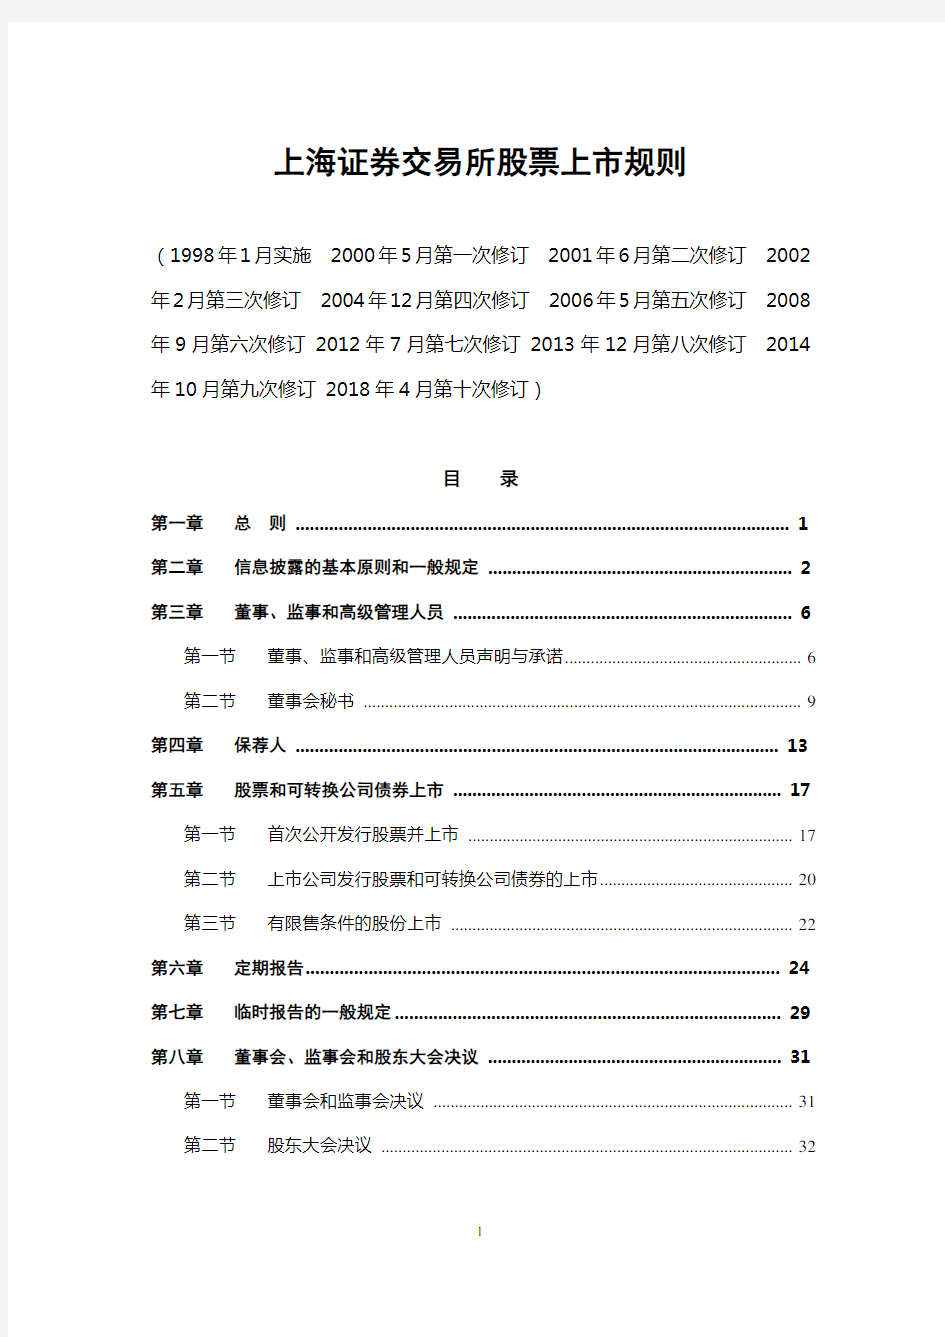 上海证券交易所股票上市规则解读(2018年修订)